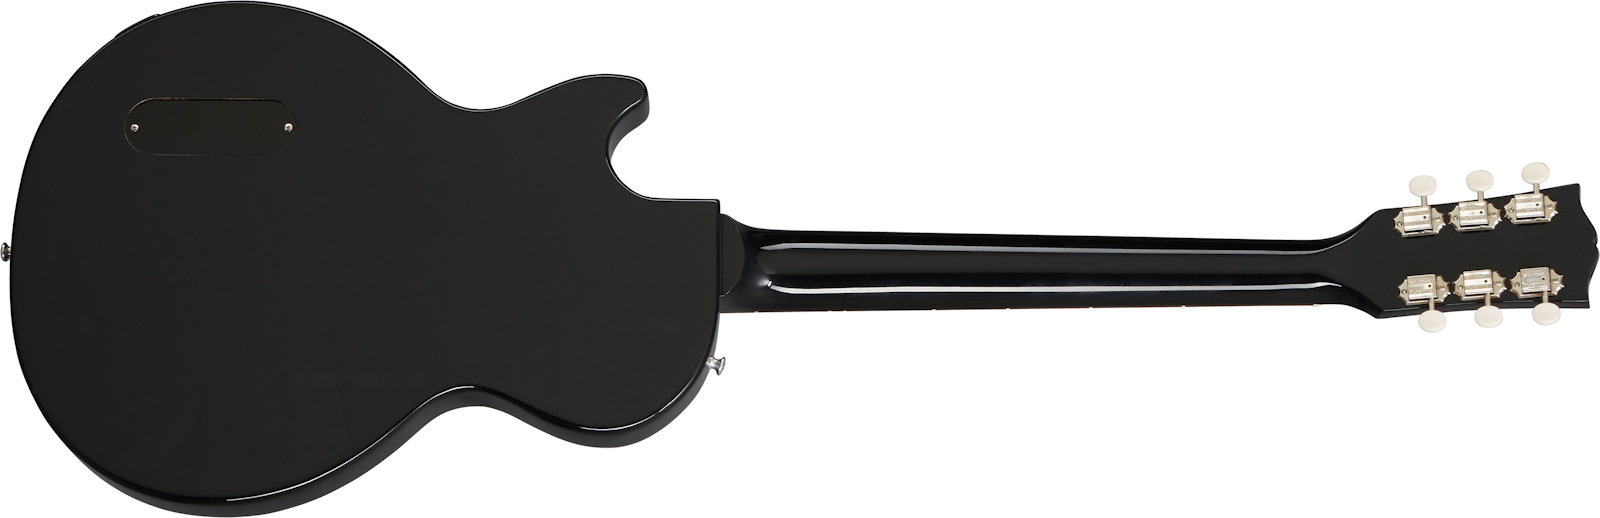 Gibson Les Paul Junior Original 2020 P90 Ht Rw - Ebony - Guitare Électrique Single Cut - Variation 1